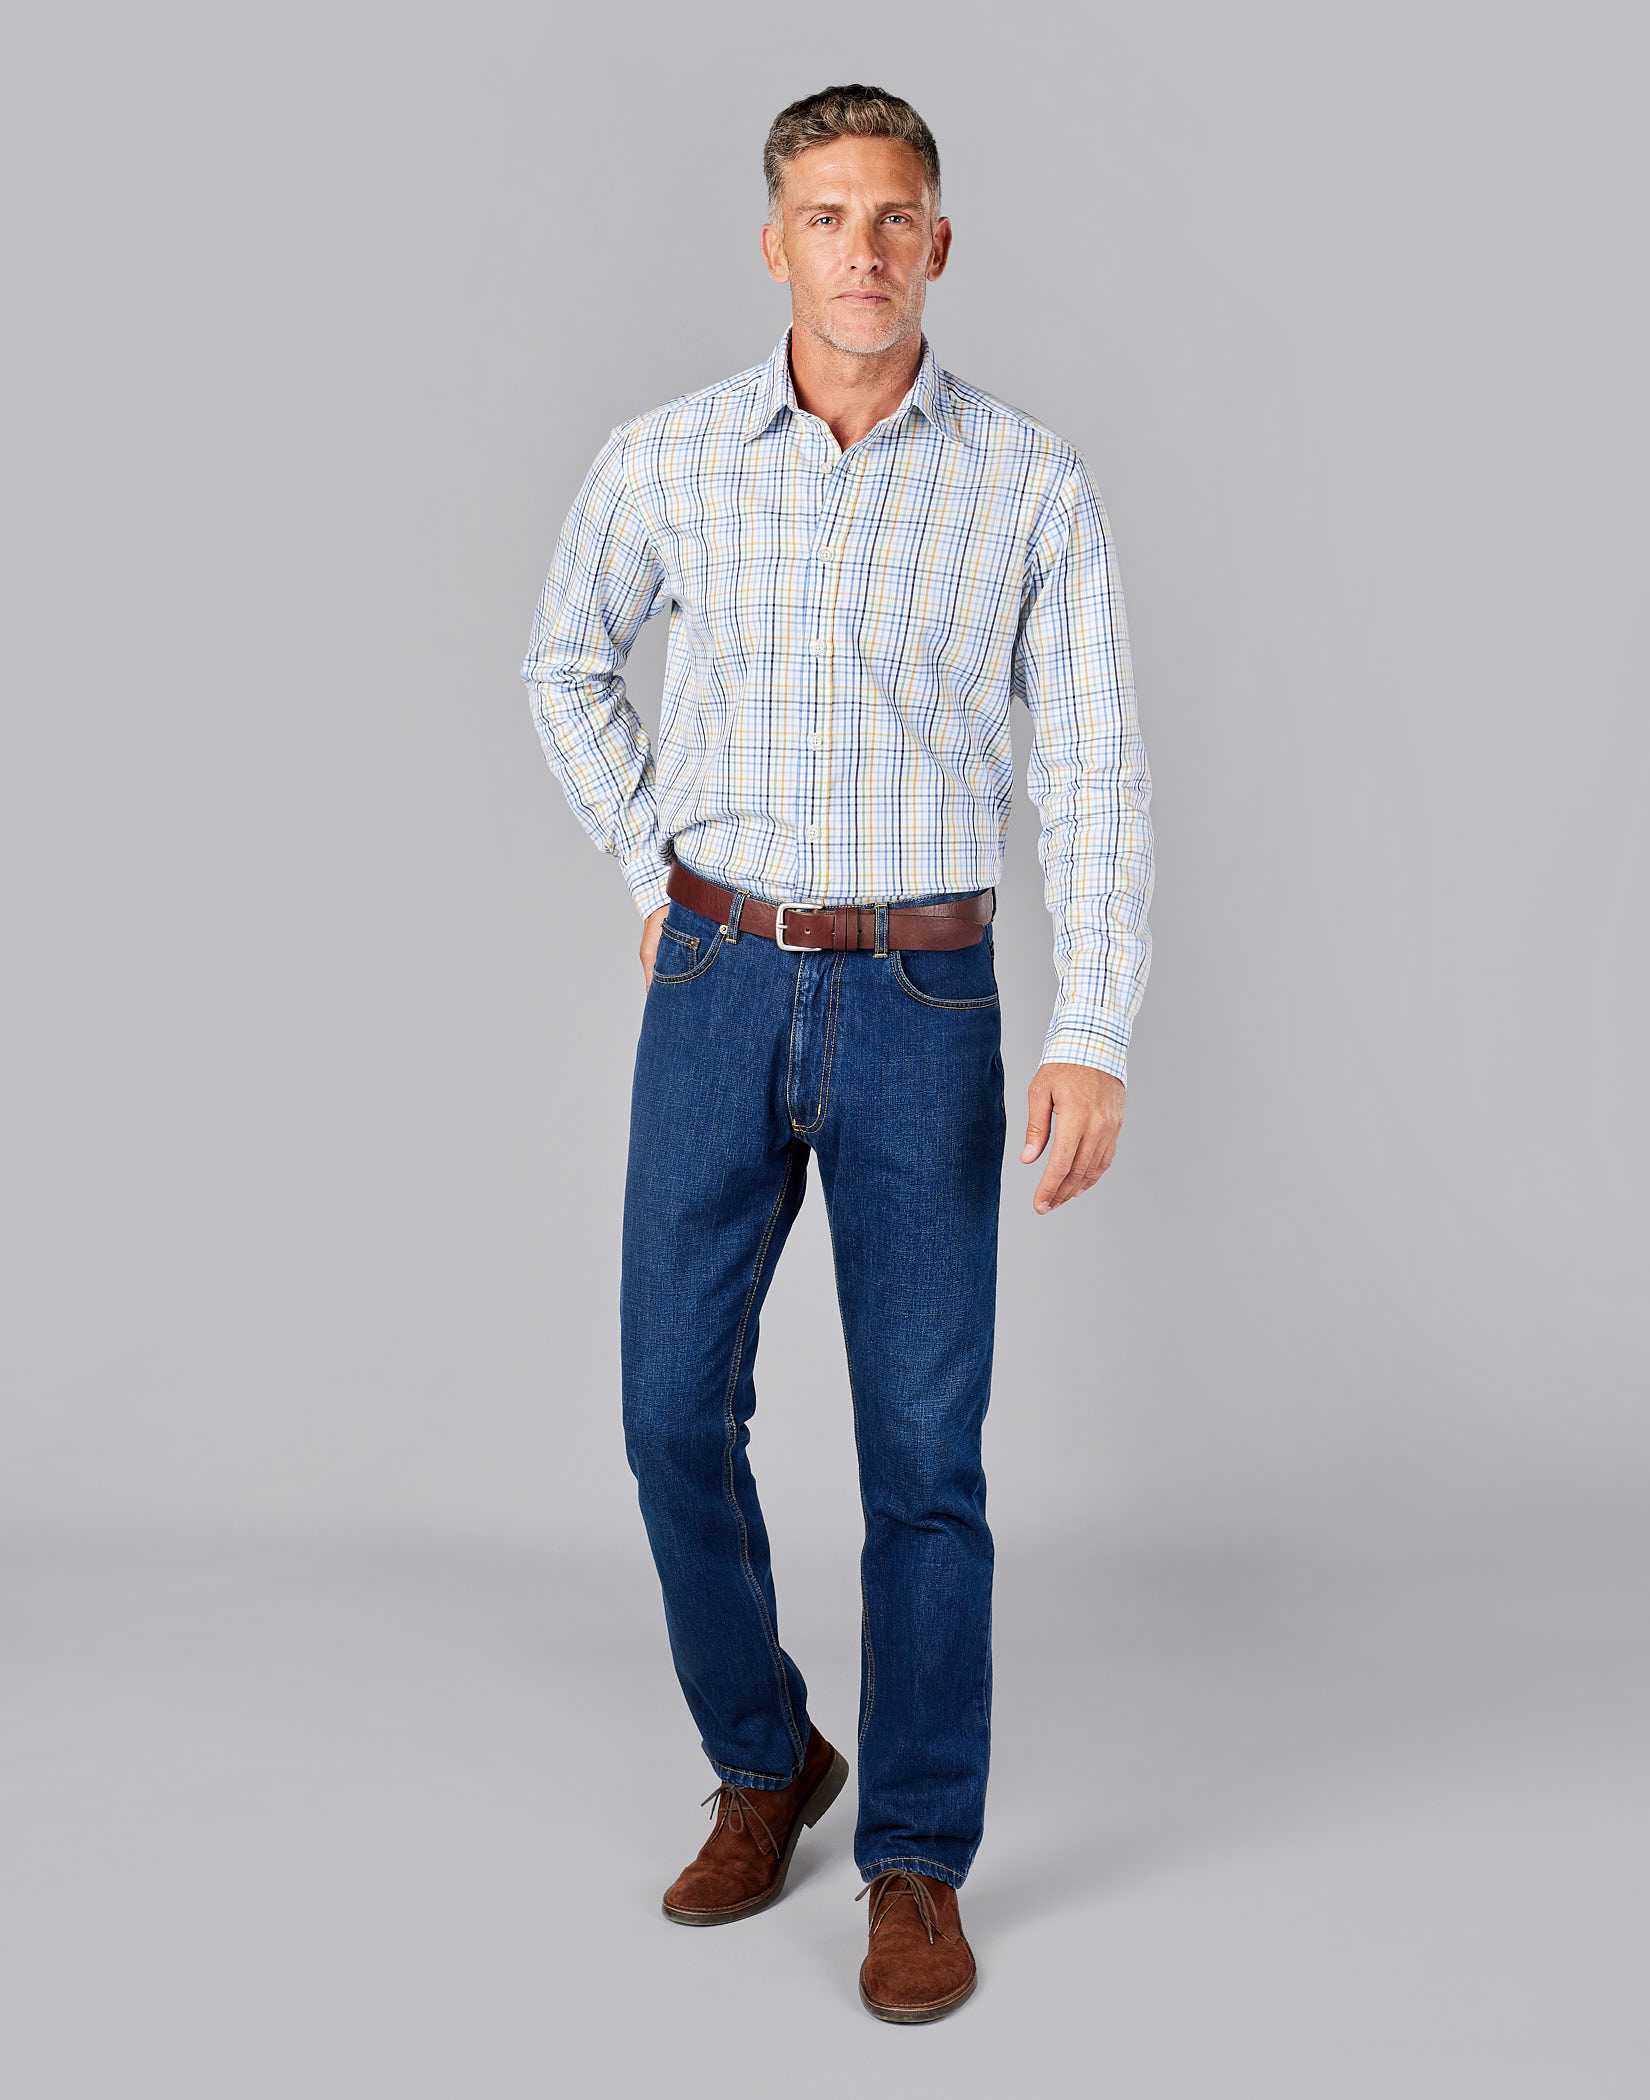 Slim Jeans - Dark denim blue - Men | H&M US-lmd.edu.vn